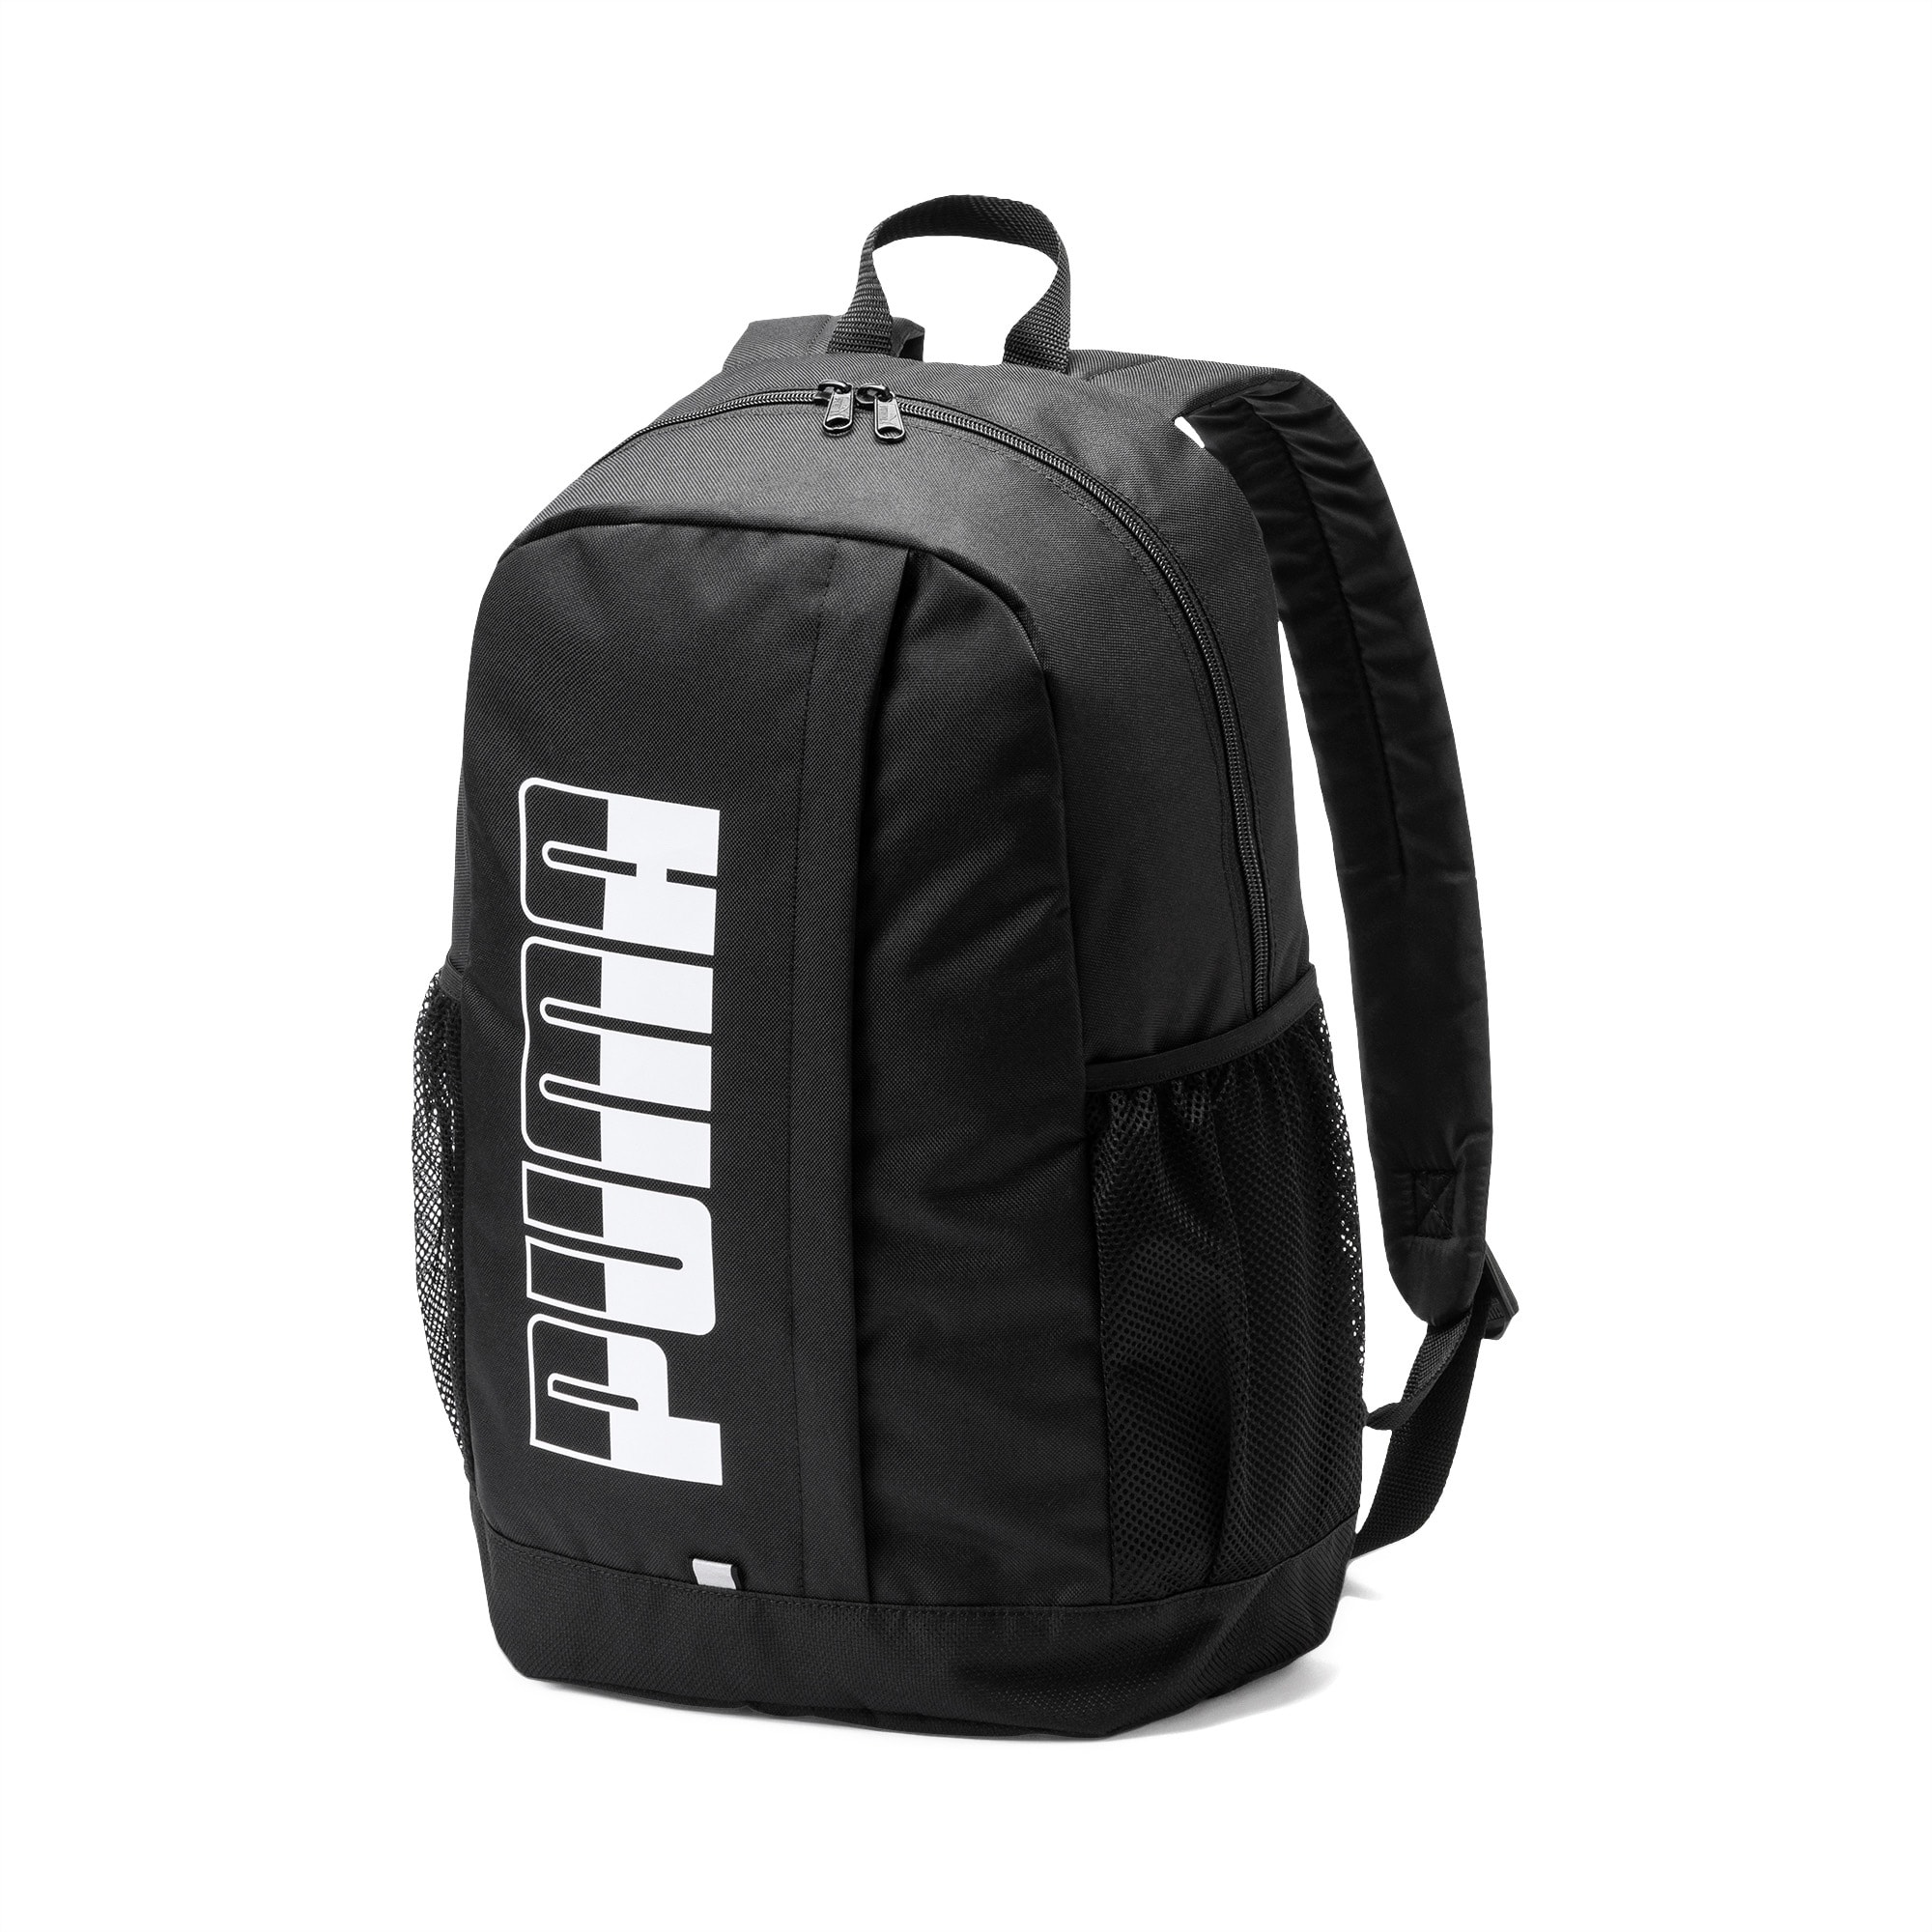 II PUMA PUMA Backpack Plus |